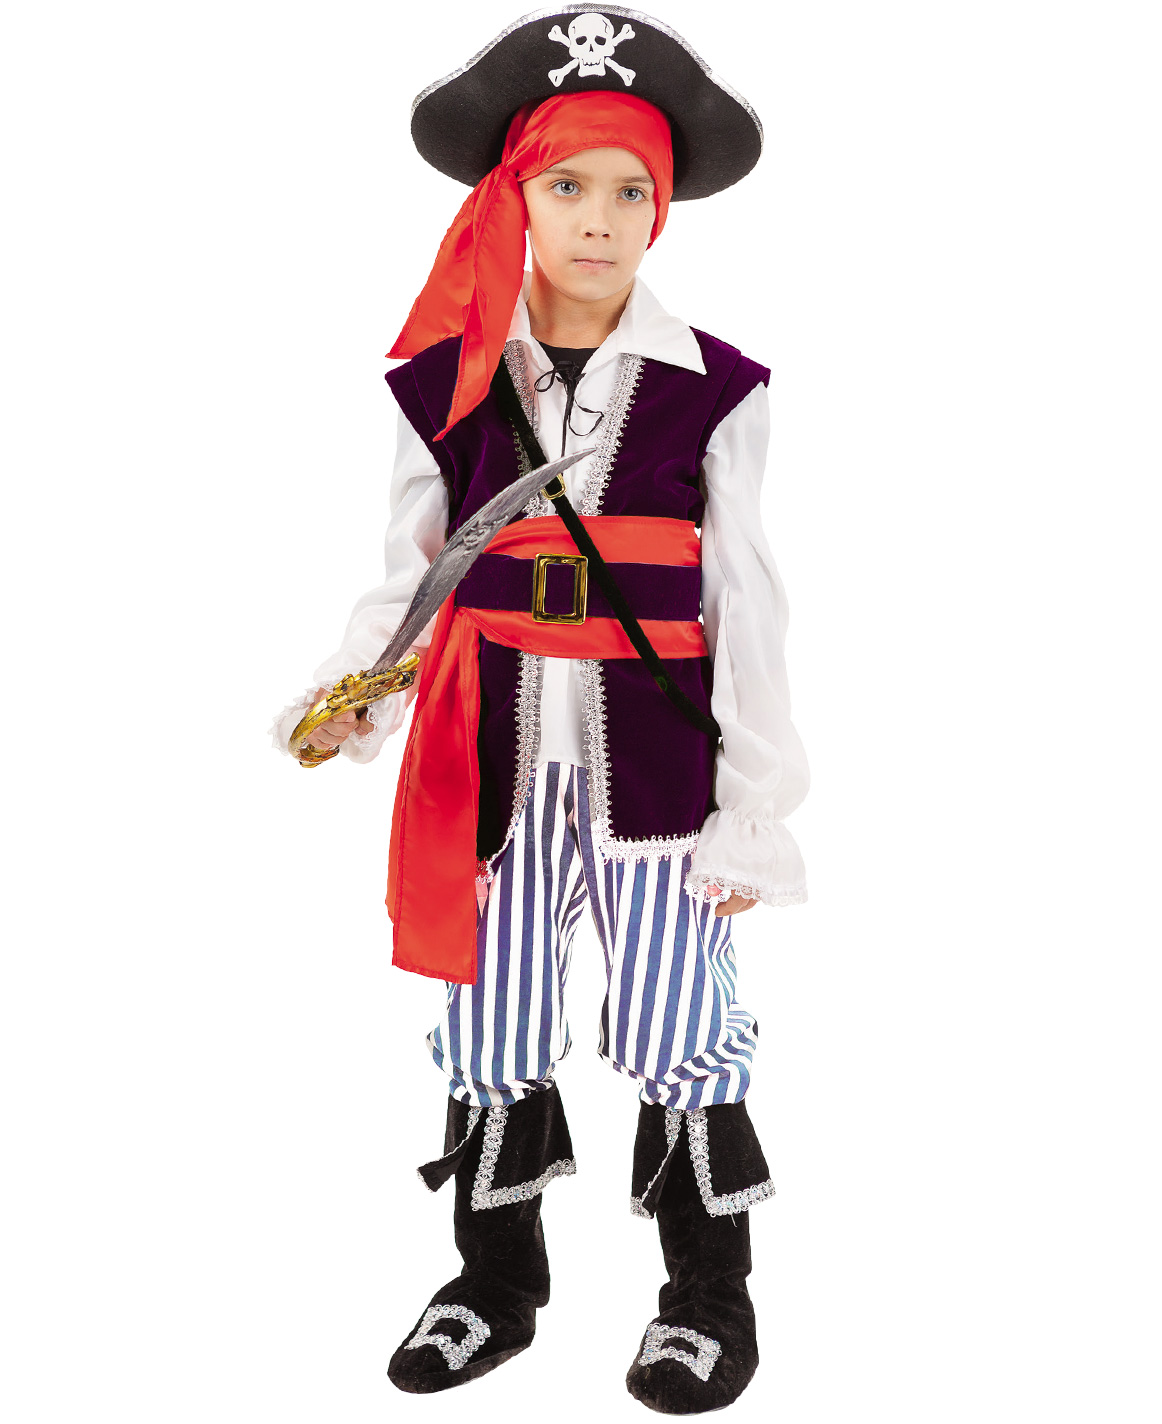 Пиратские костюмы своими руками: рекомендации по изготовлению